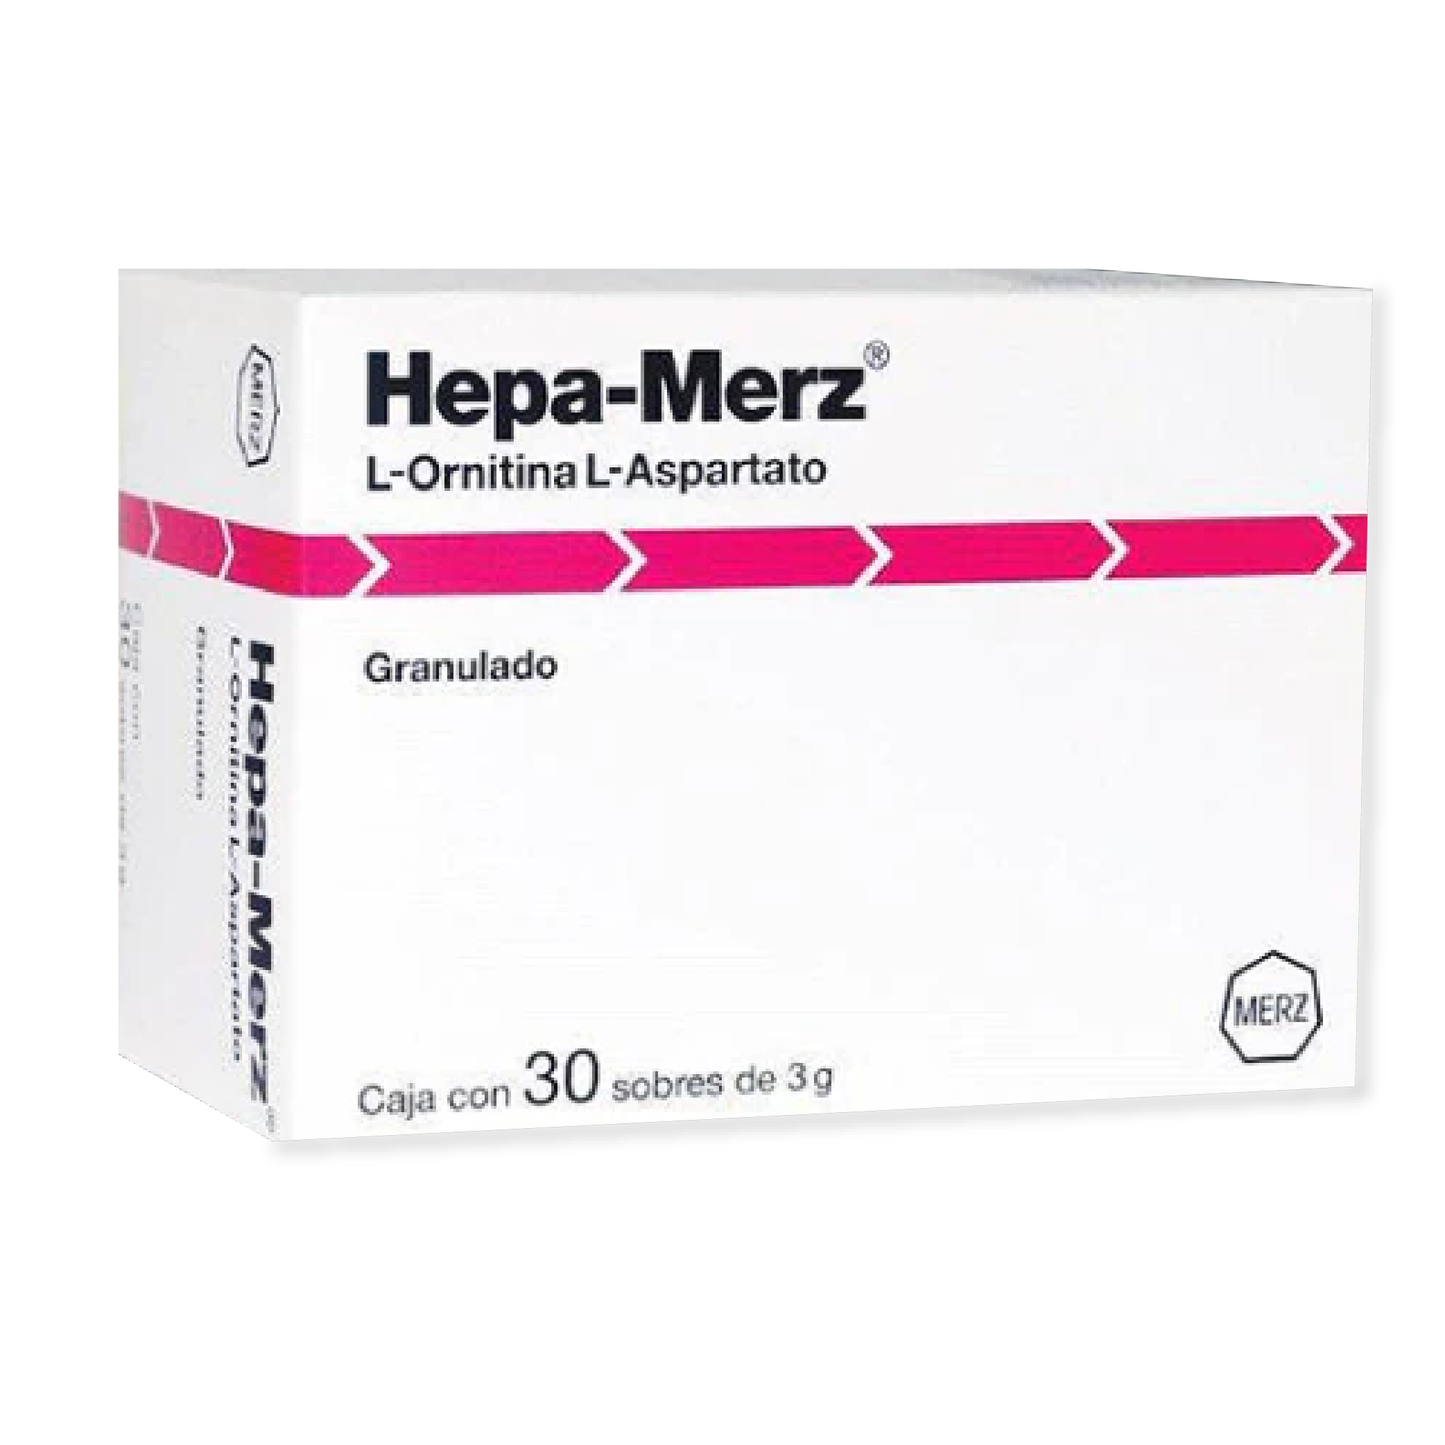 Hepa-Merz (L-Ornitina, L-Aspartato) Gdo 3 g Cja c/30 sobs